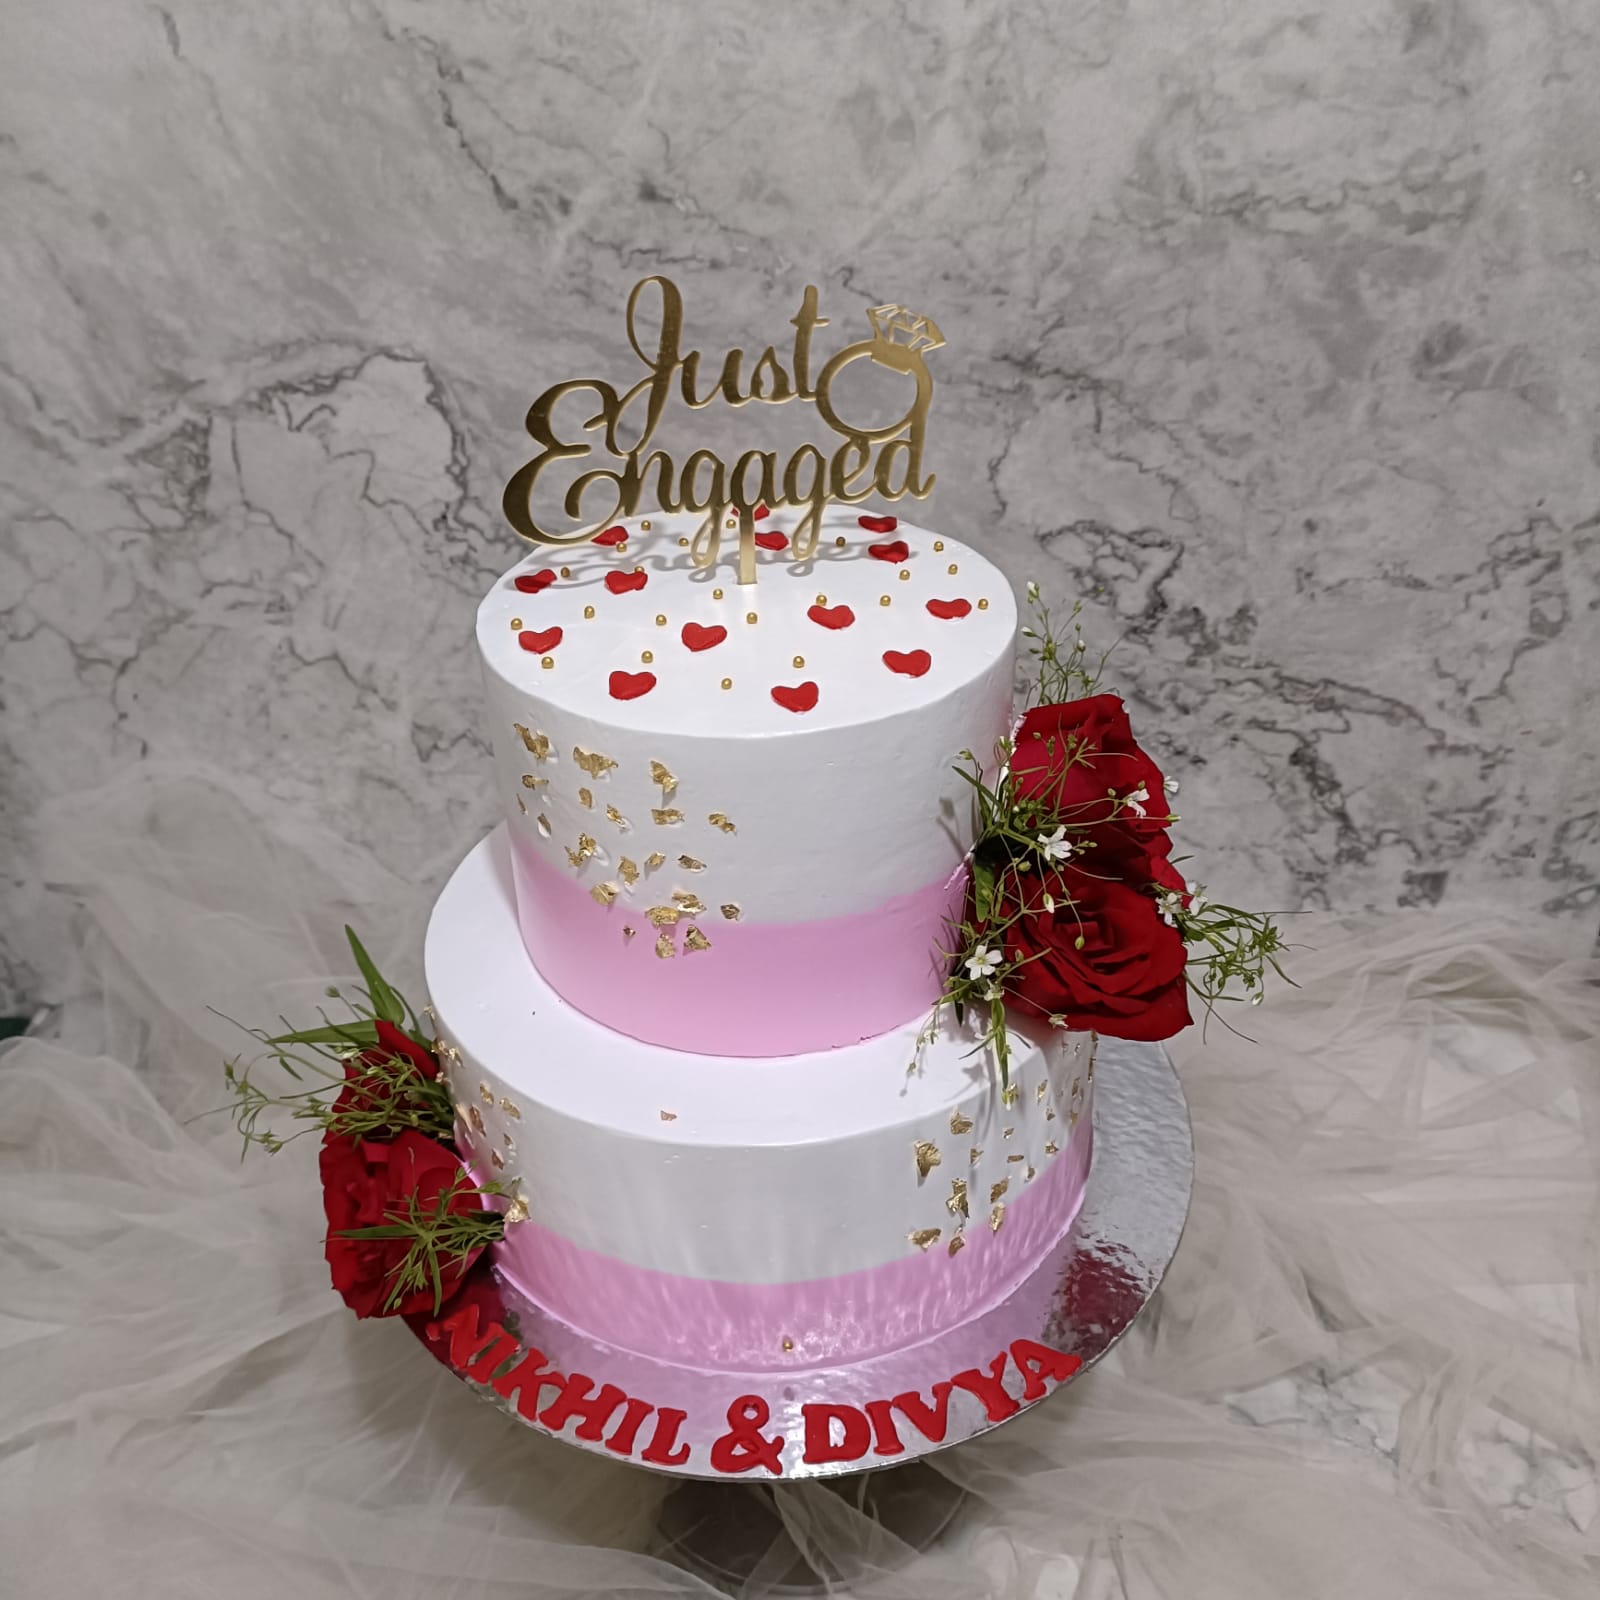 1st Anniversary CakeLove Cake  Couple cake Engagement cake  cake for  love  Anniversary cake 